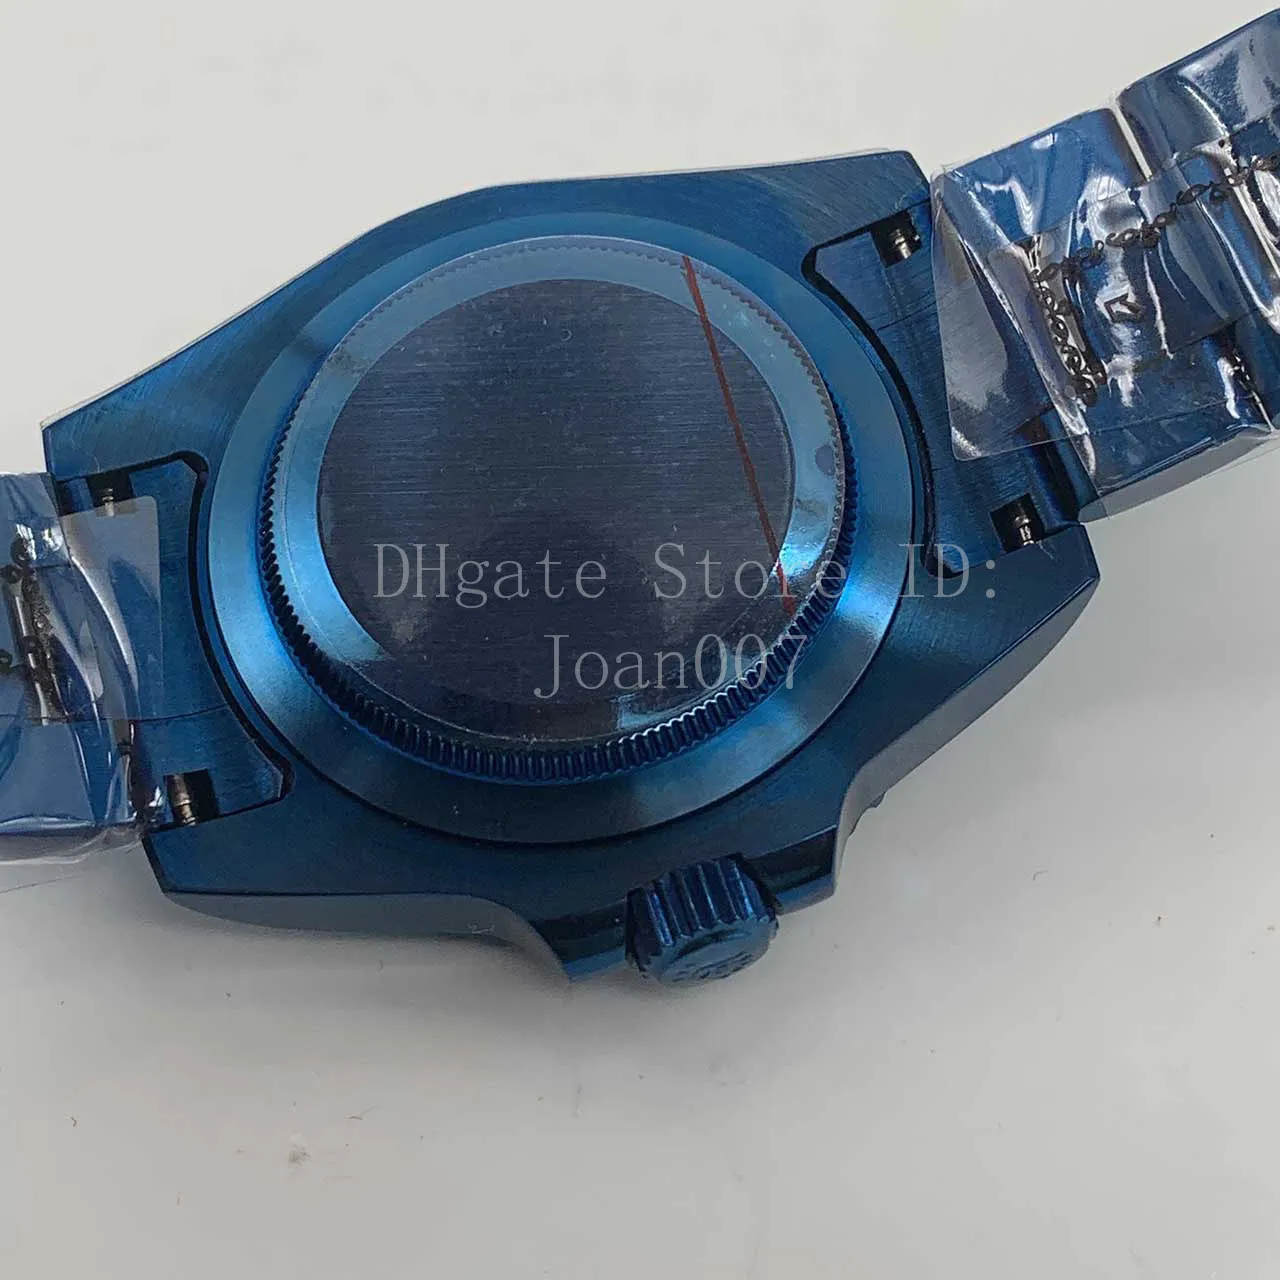 Novo relógio masculino preto moldura de cerâmica sub relógios azul brilhante chapeamento aço inoxidável relógios mecânicos automáticos 40mm mad2596